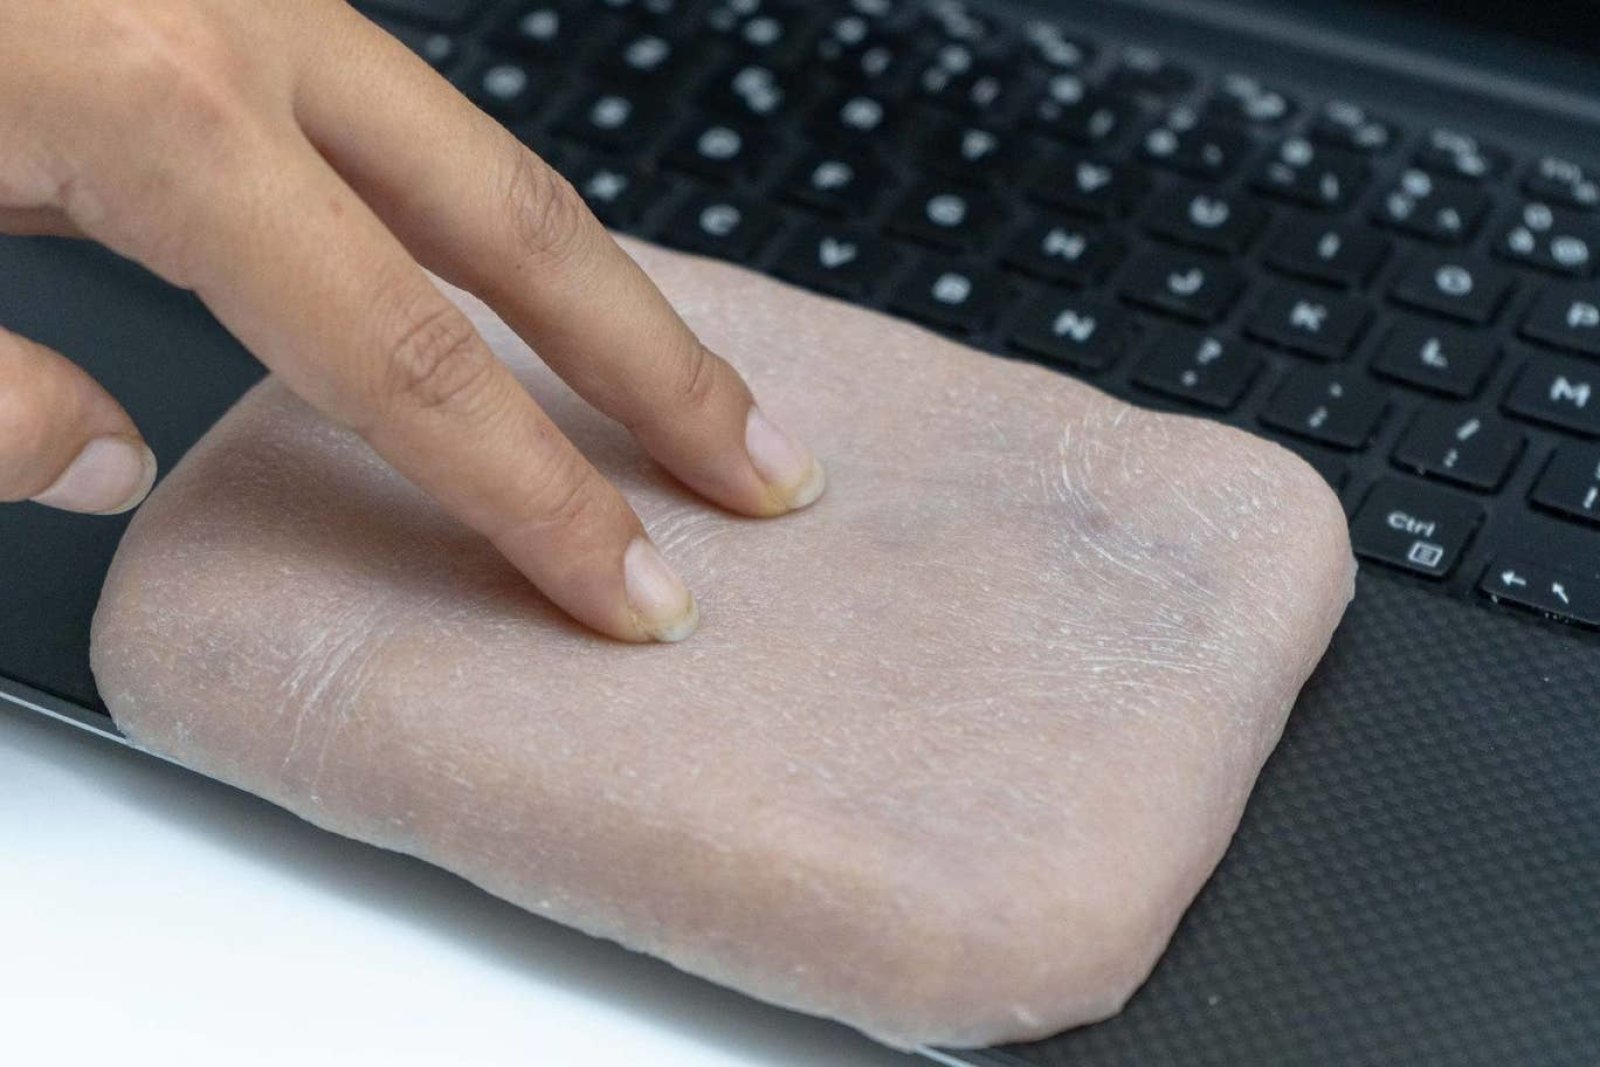 Skin-on, czyli interfejs wykorzystujący sztuczną skórę